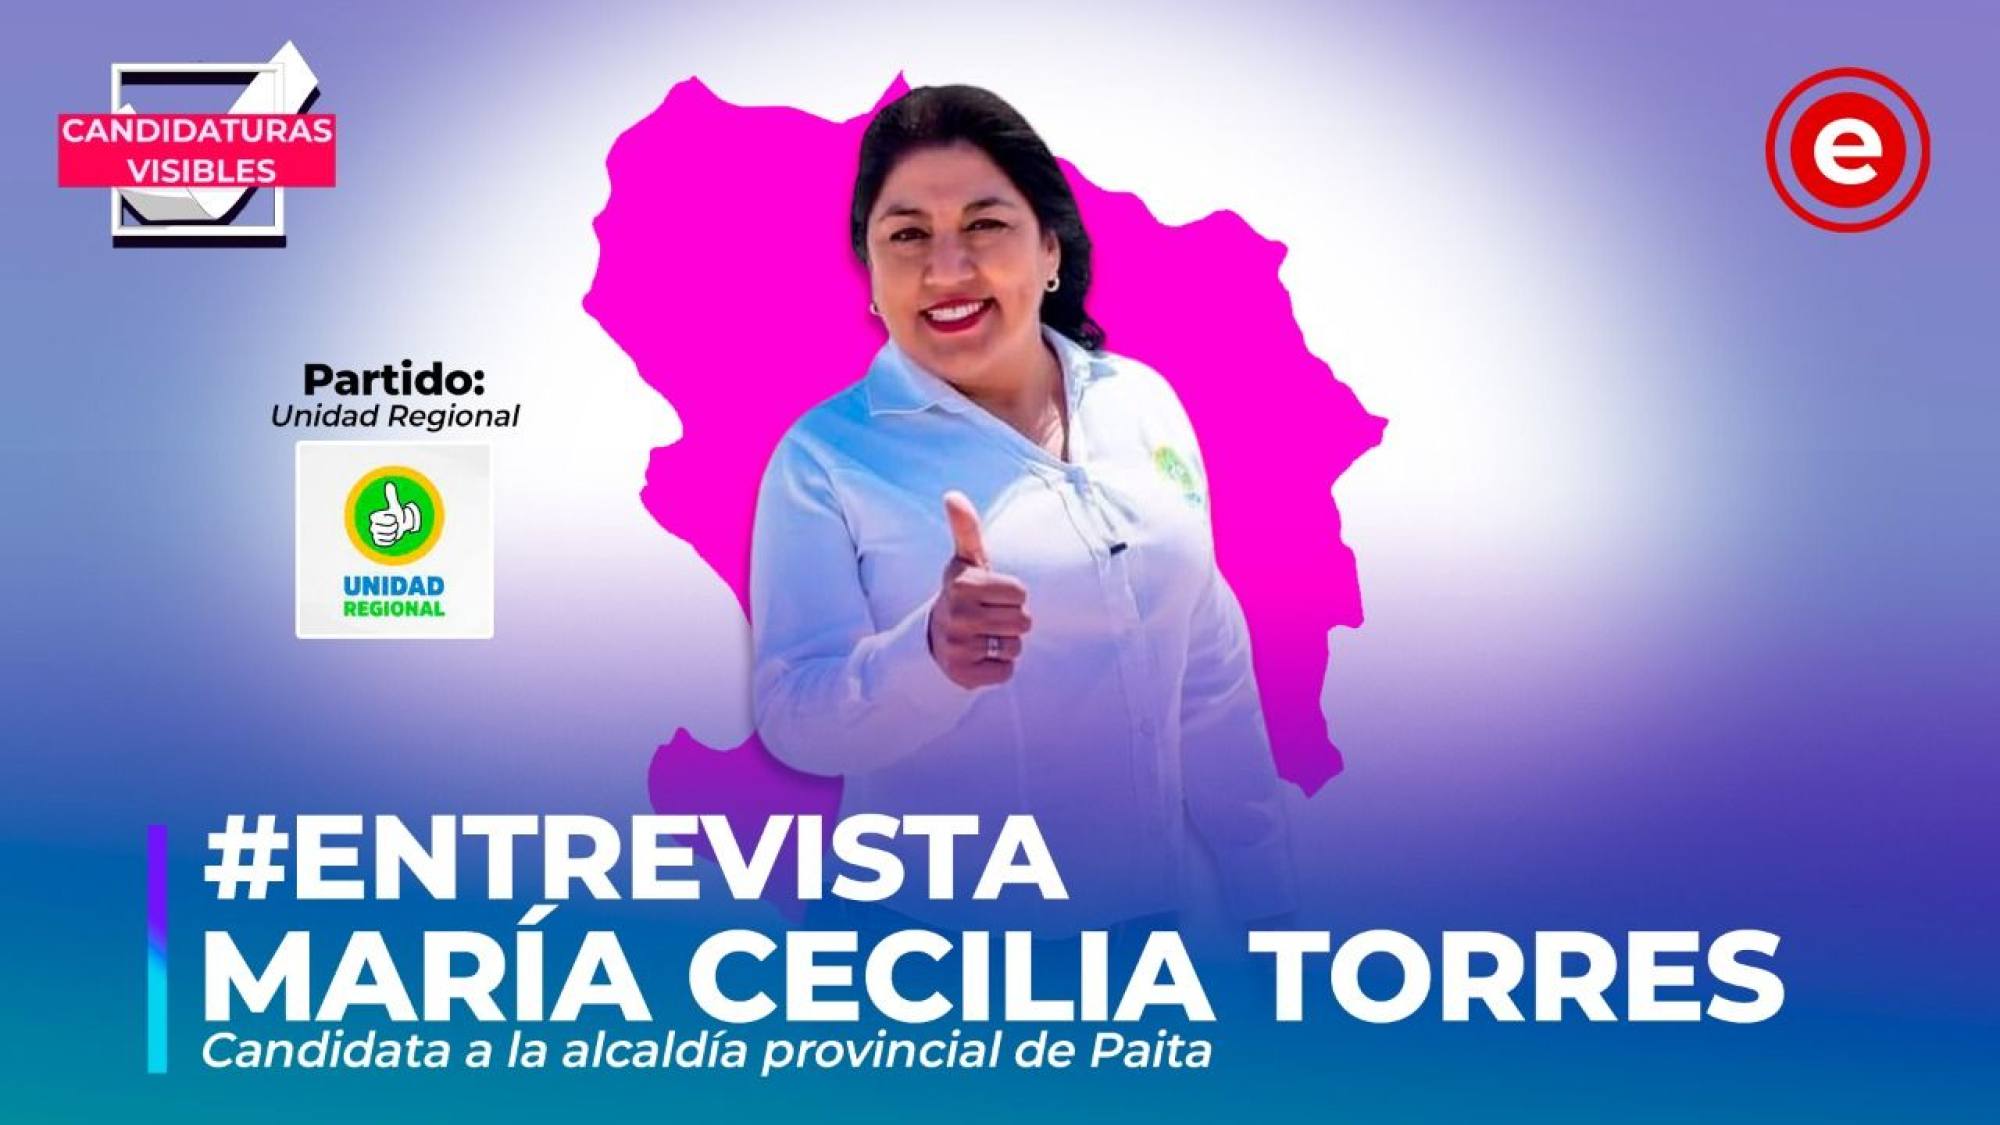 Candidaturas Visibles | María Cecilia Torres candidata a la alcaldía provincial de Paita por Unidad Regional, Epicentro TV